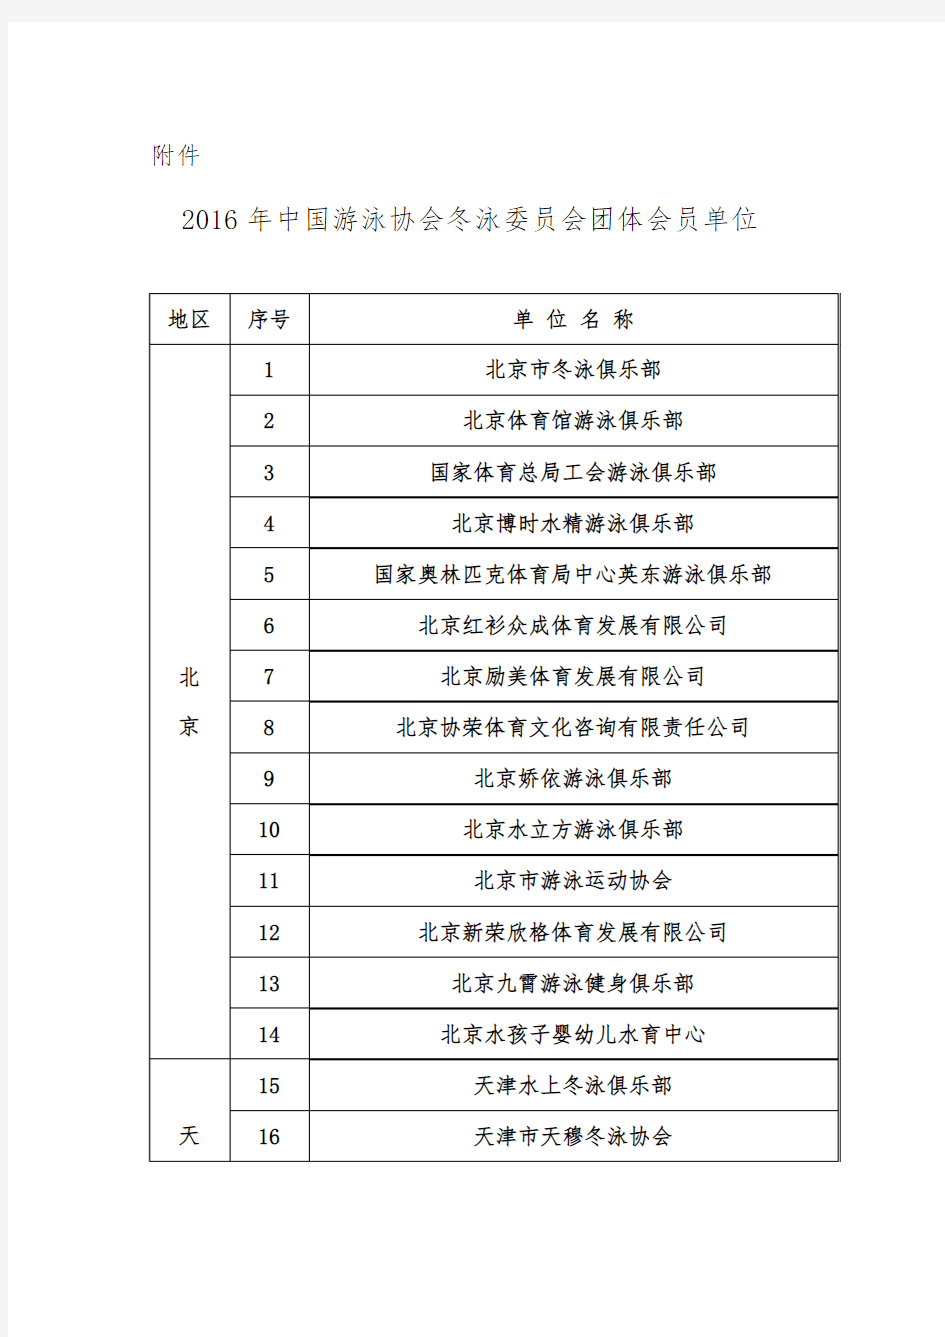 中国游泳协会第四届冬泳委员会团体会员及委员表